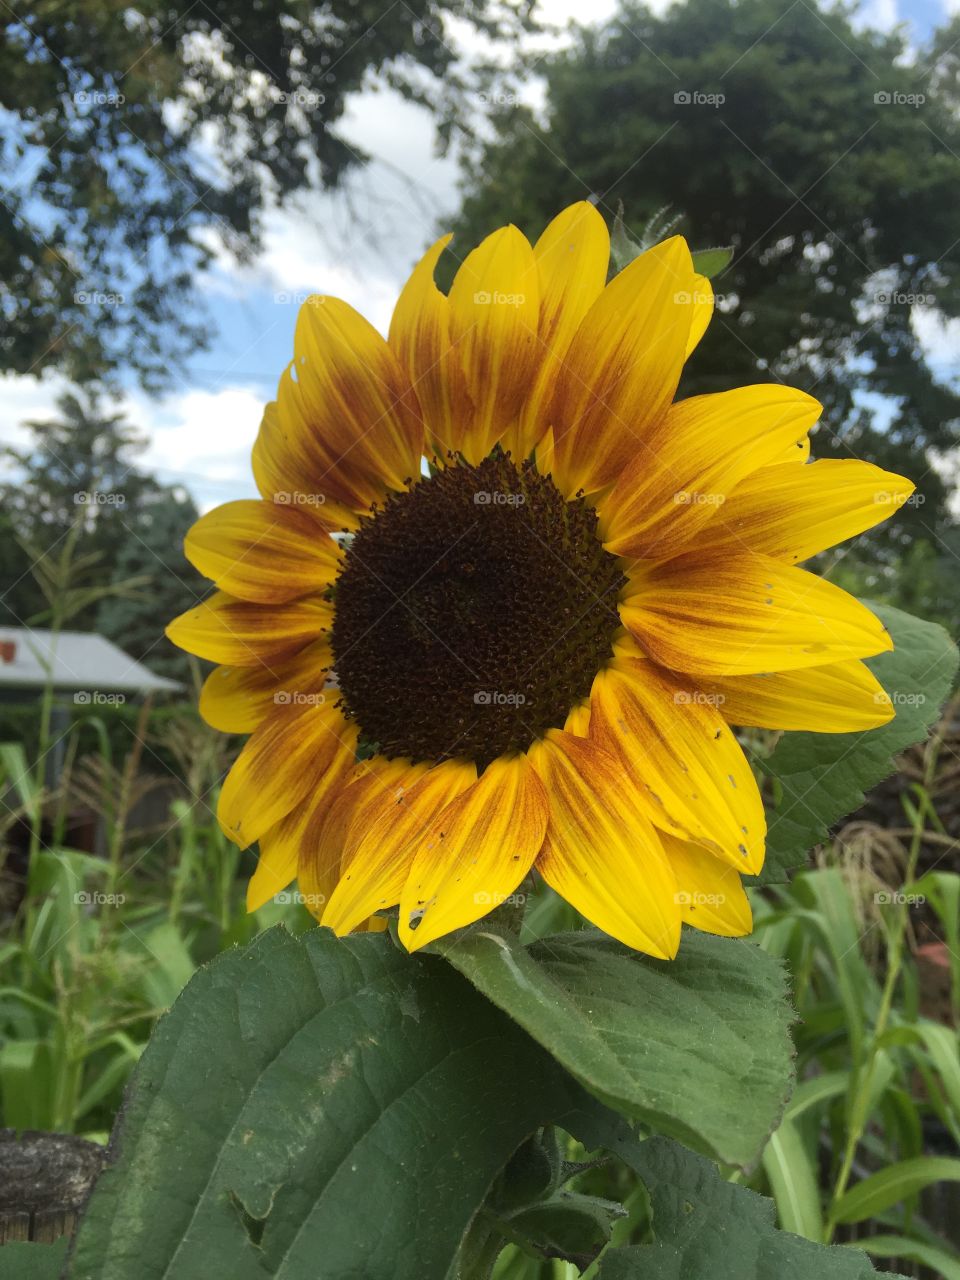 Sunflower. Beautiful sunflower standing tall!